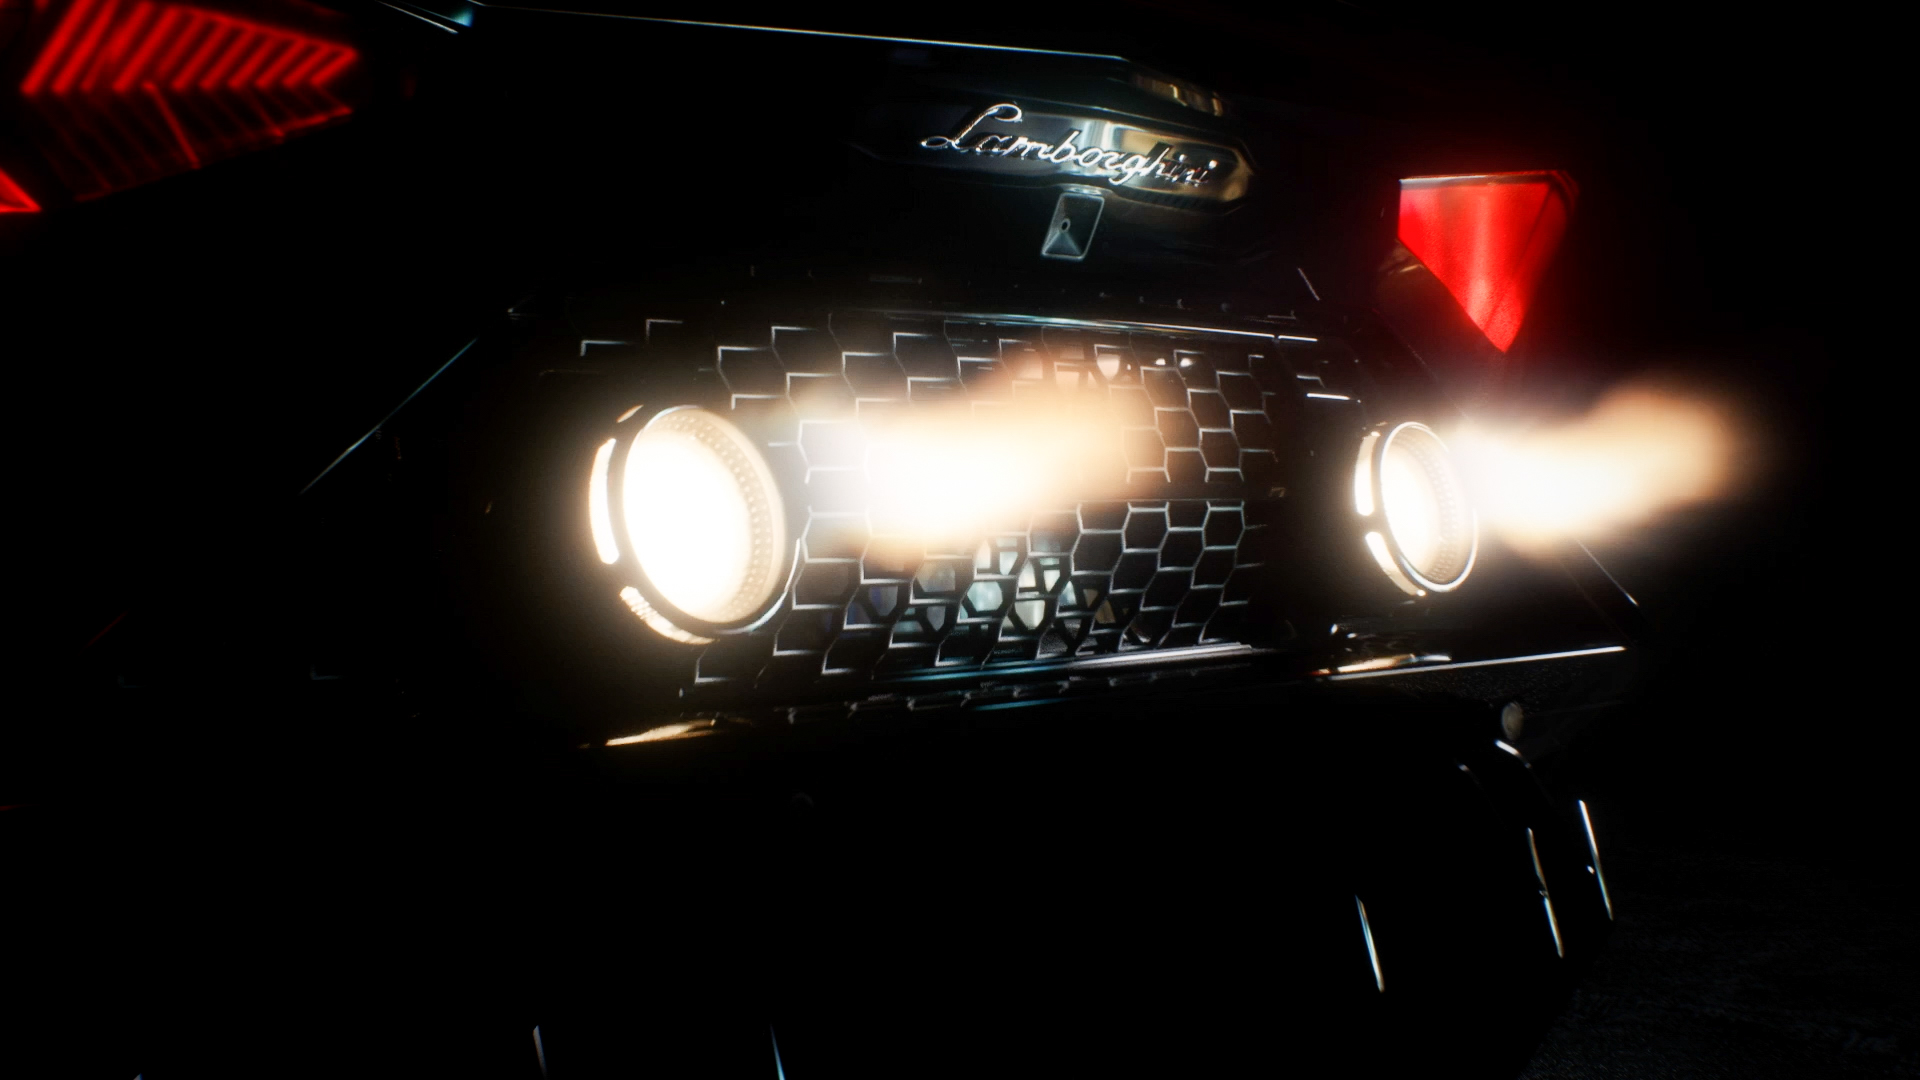 Ekskluzivni Lamborghini Aventador LP 780-4 Ultimae Coupé koji će biti uparen sa NFT 1.1 i stavljen na aukciju 19. aprila 2022., snimak ekrana iz video trejlera